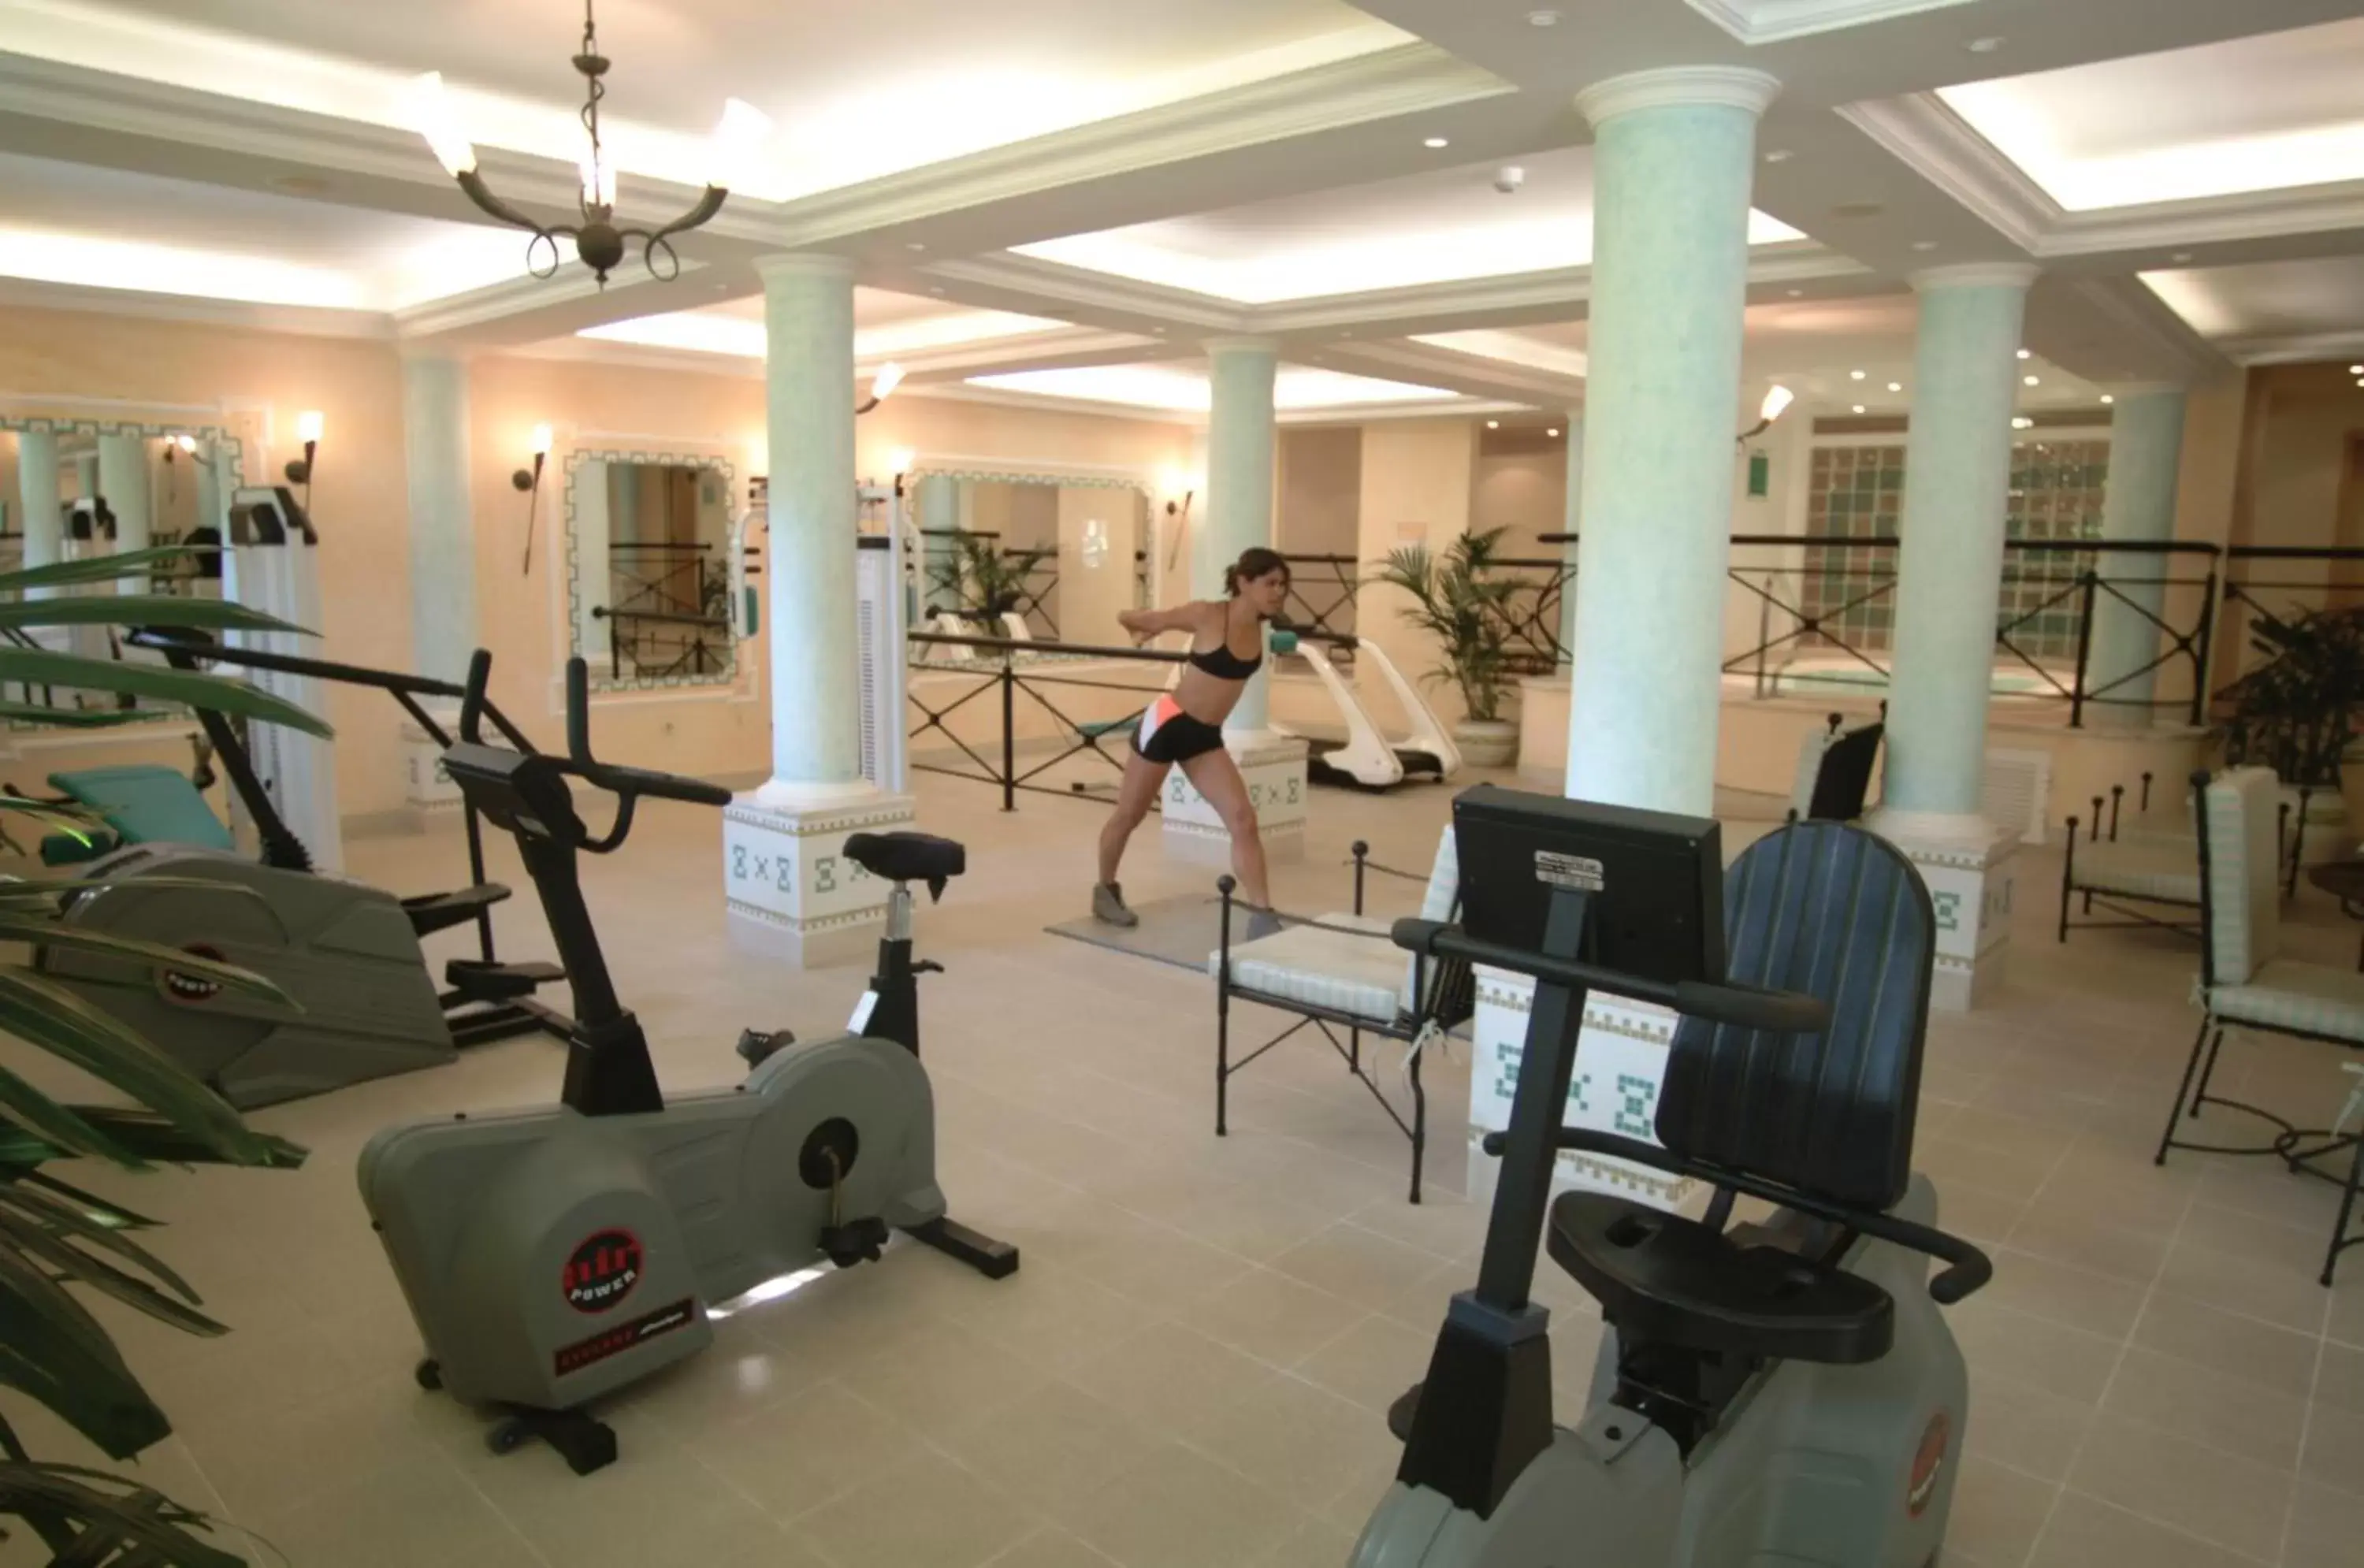 Fitness centre/facilities, Fitness Center/Facilities in Pestana Village Garden Hotel